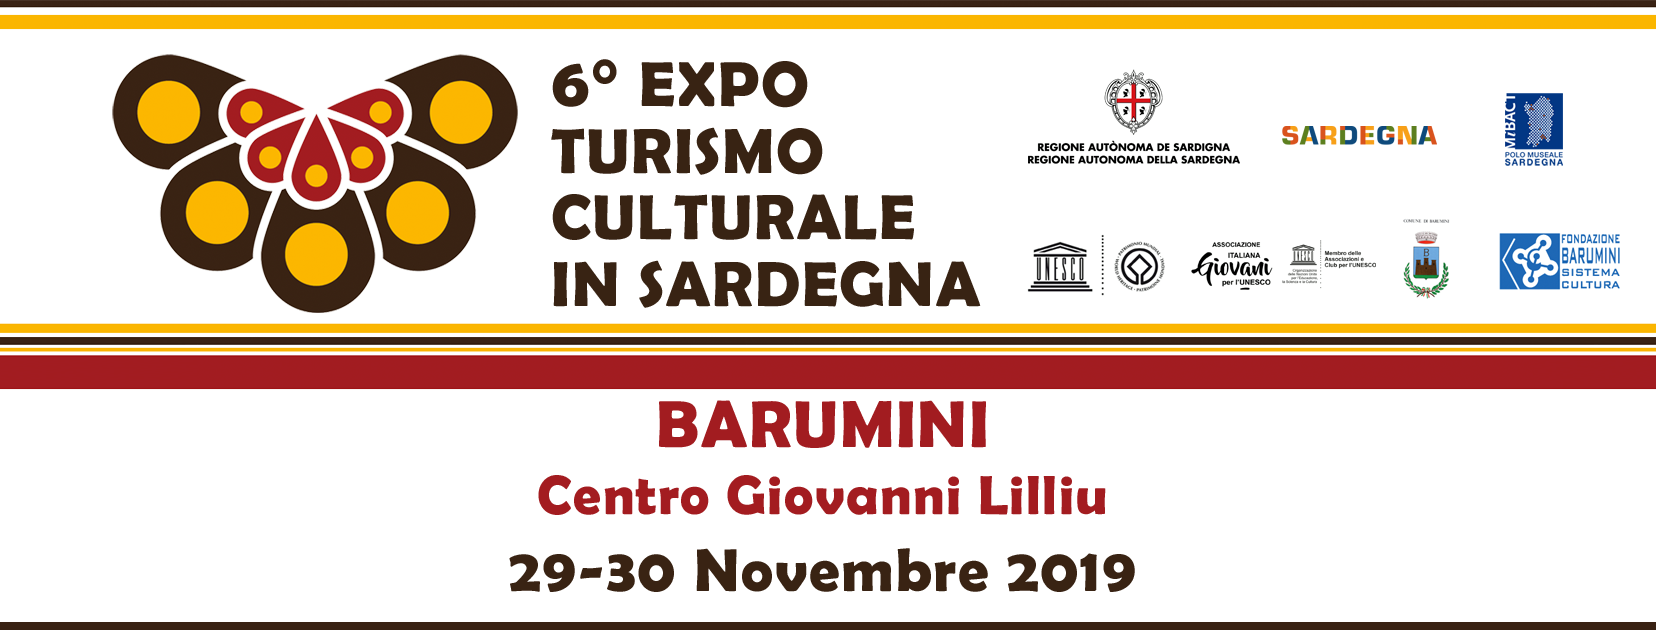 Barumini expo turismo culturale in sardegna